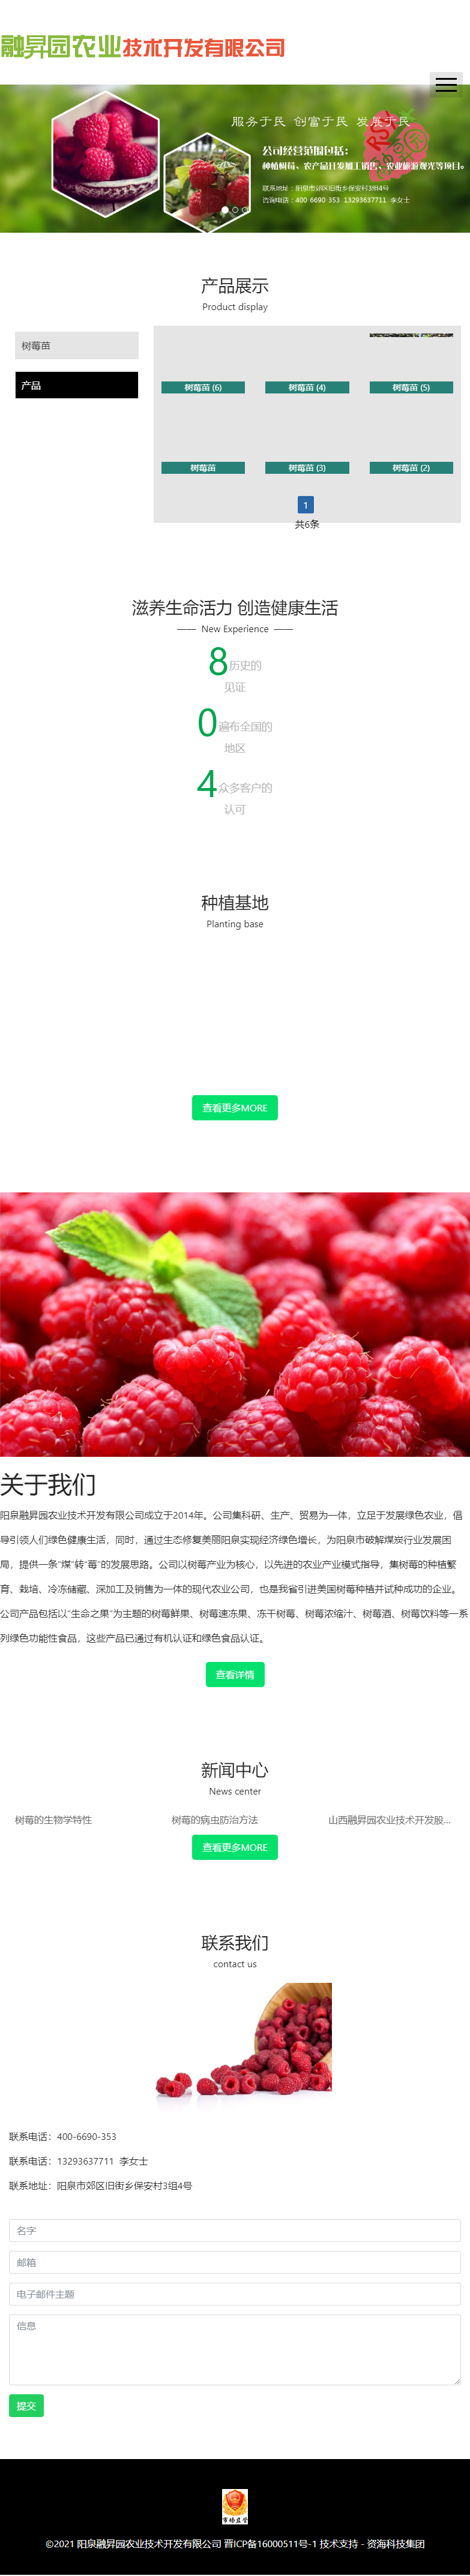 山西融昇园农业技术开发股份有限公司网站案例